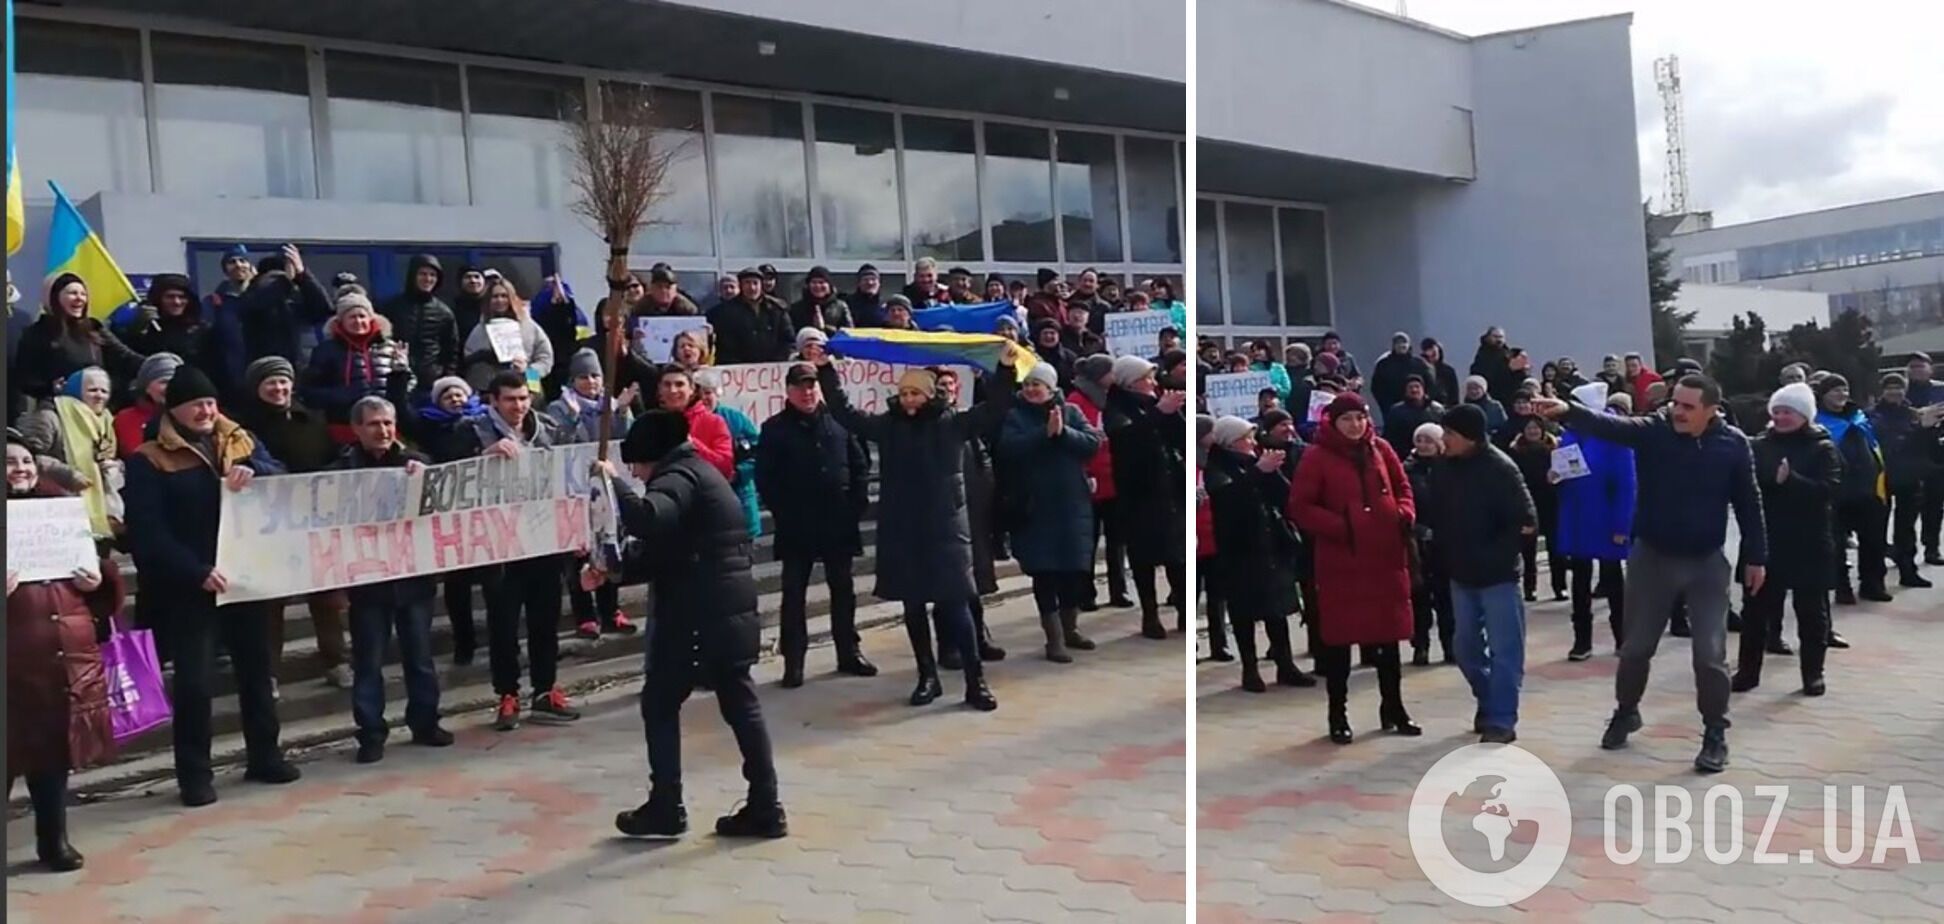 Мітинг проти російської окупації у Новій Каховці